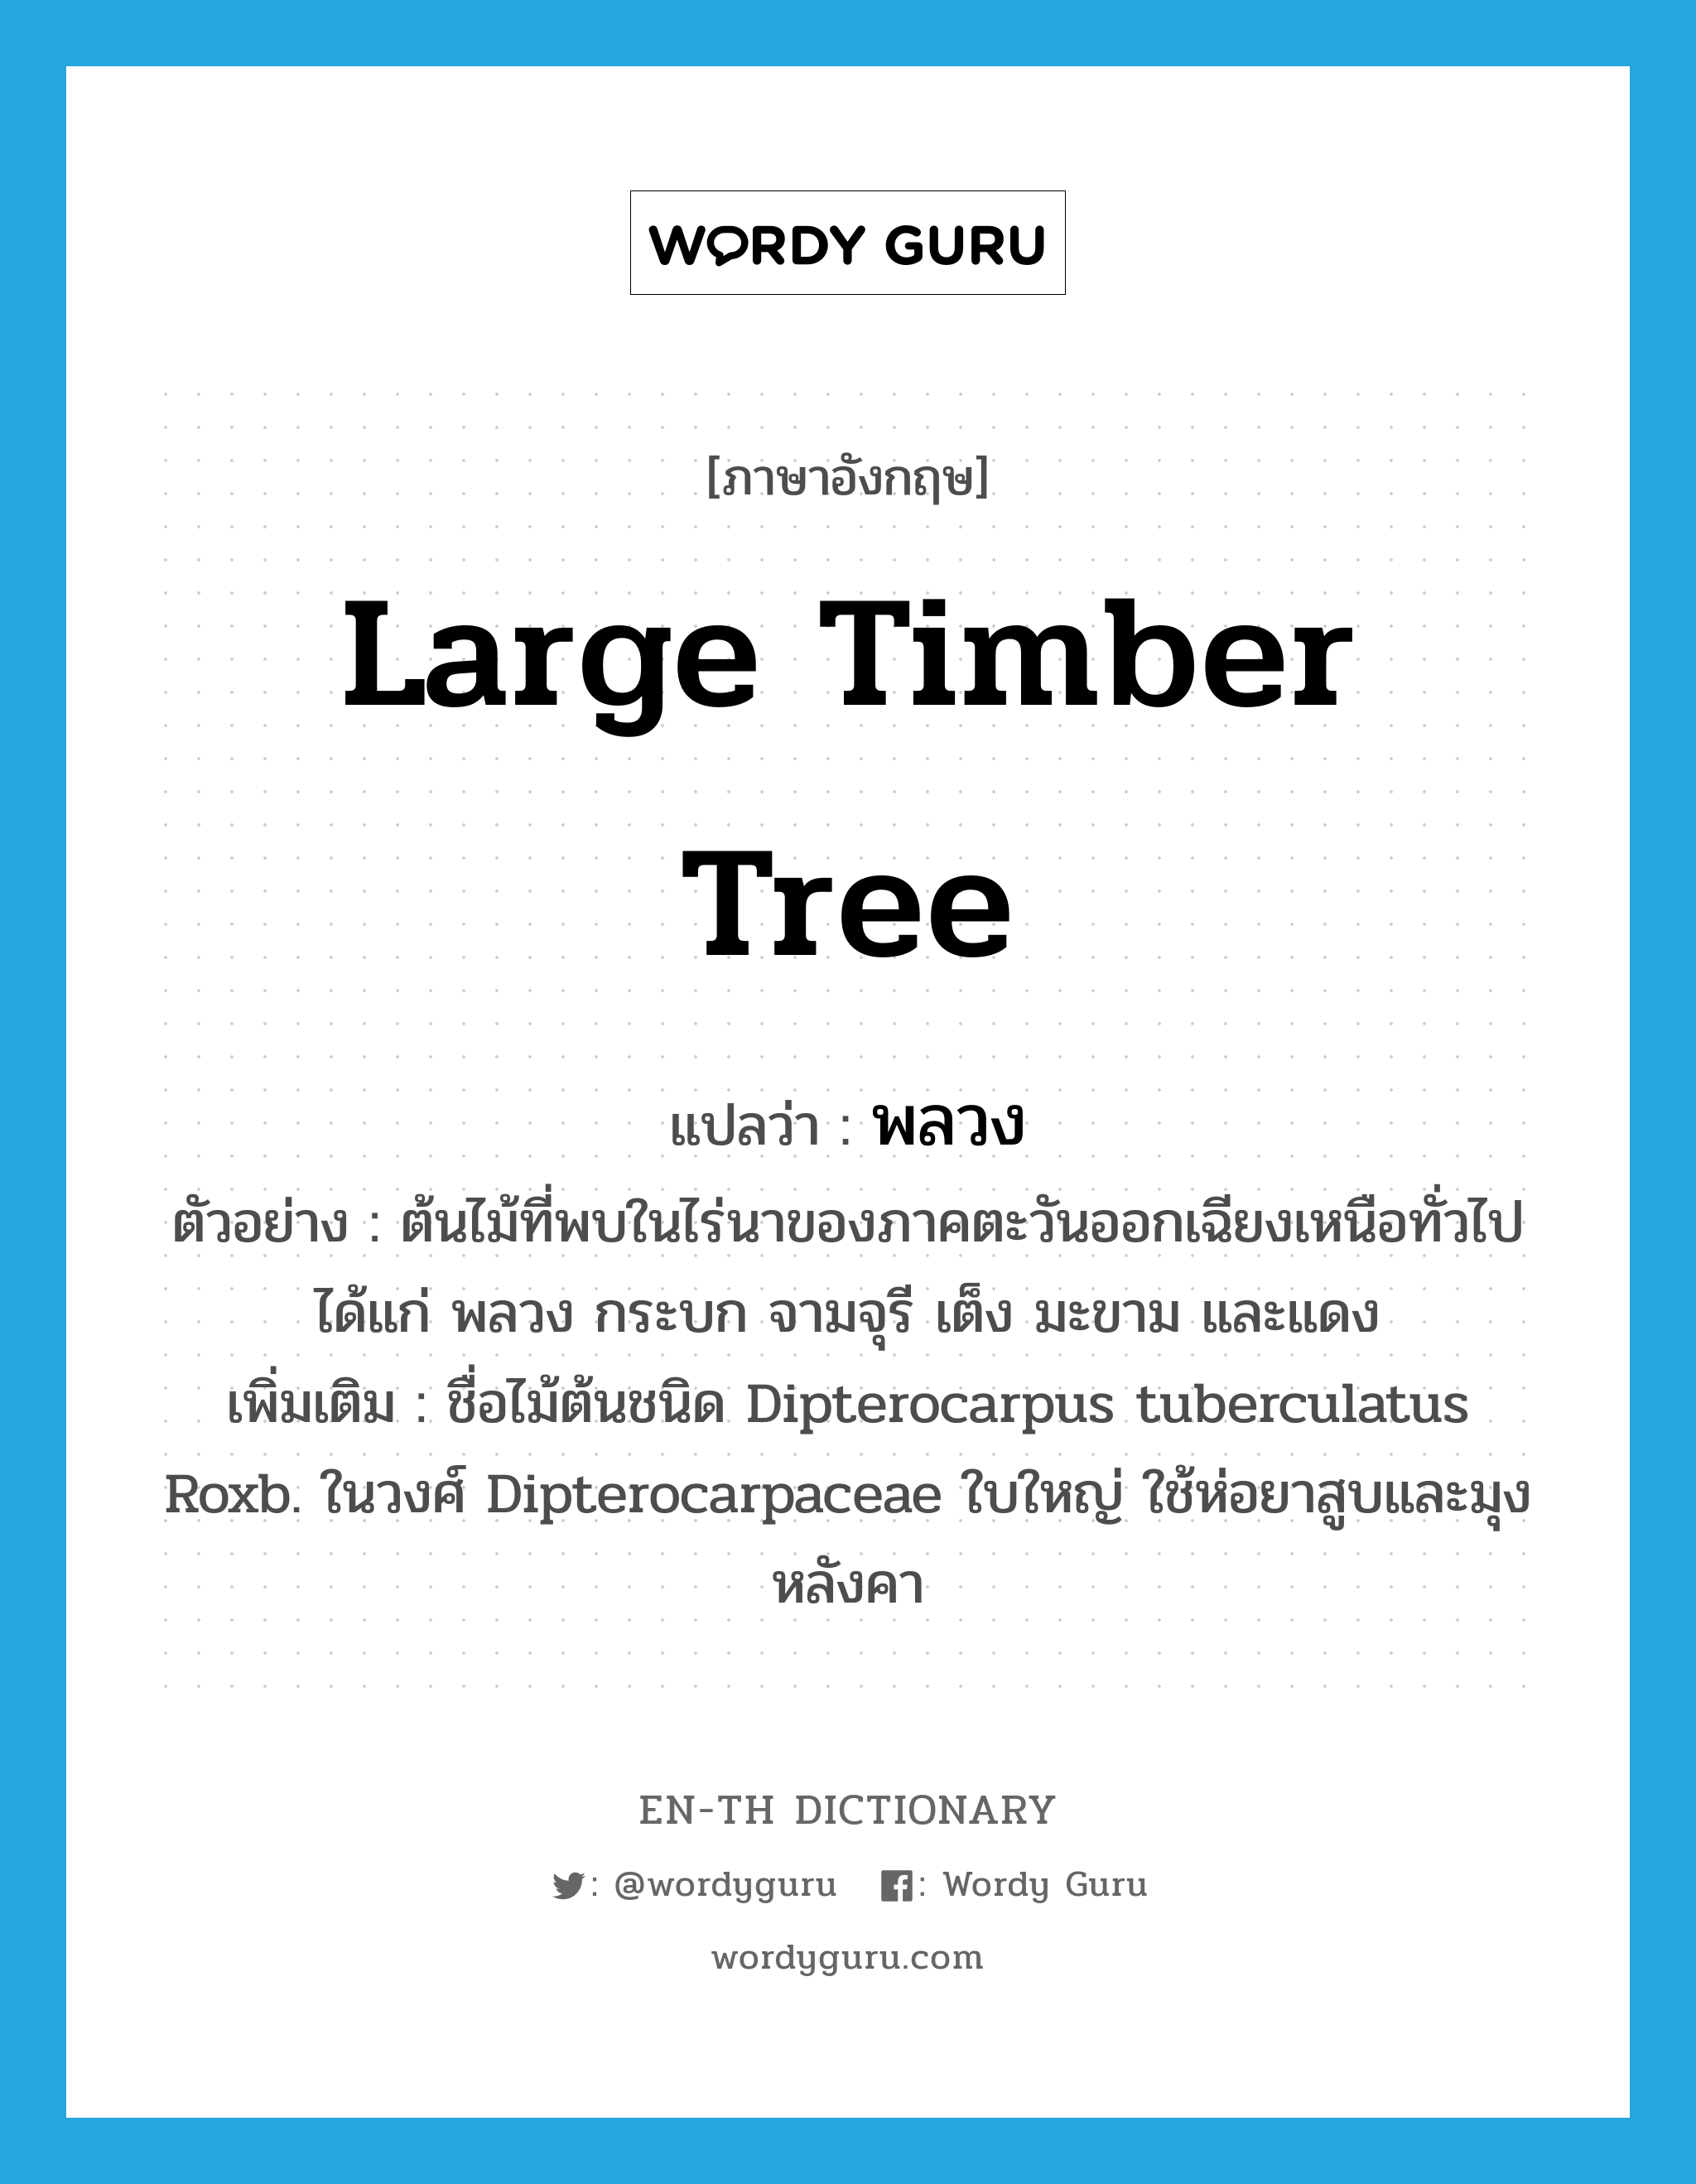 large timber tree แปลว่า?, คำศัพท์ภาษาอังกฤษ large timber tree แปลว่า พลวง ประเภท N ตัวอย่าง ต้นไม้ที่พบในไร่นาของภาคตะวันออกเฉียงเหนือทั่วไปได้แก่ พลวง กระบก จามจุรี เต็ง มะขาม และแดง เพิ่มเติม ชื่อไม้ต้นชนิด Dipterocarpus tuberculatus Roxb. ในวงศ์ Dipterocarpaceae ใบใหญ่ ใช้ห่อยาสูบและมุงหลังคา หมวด N